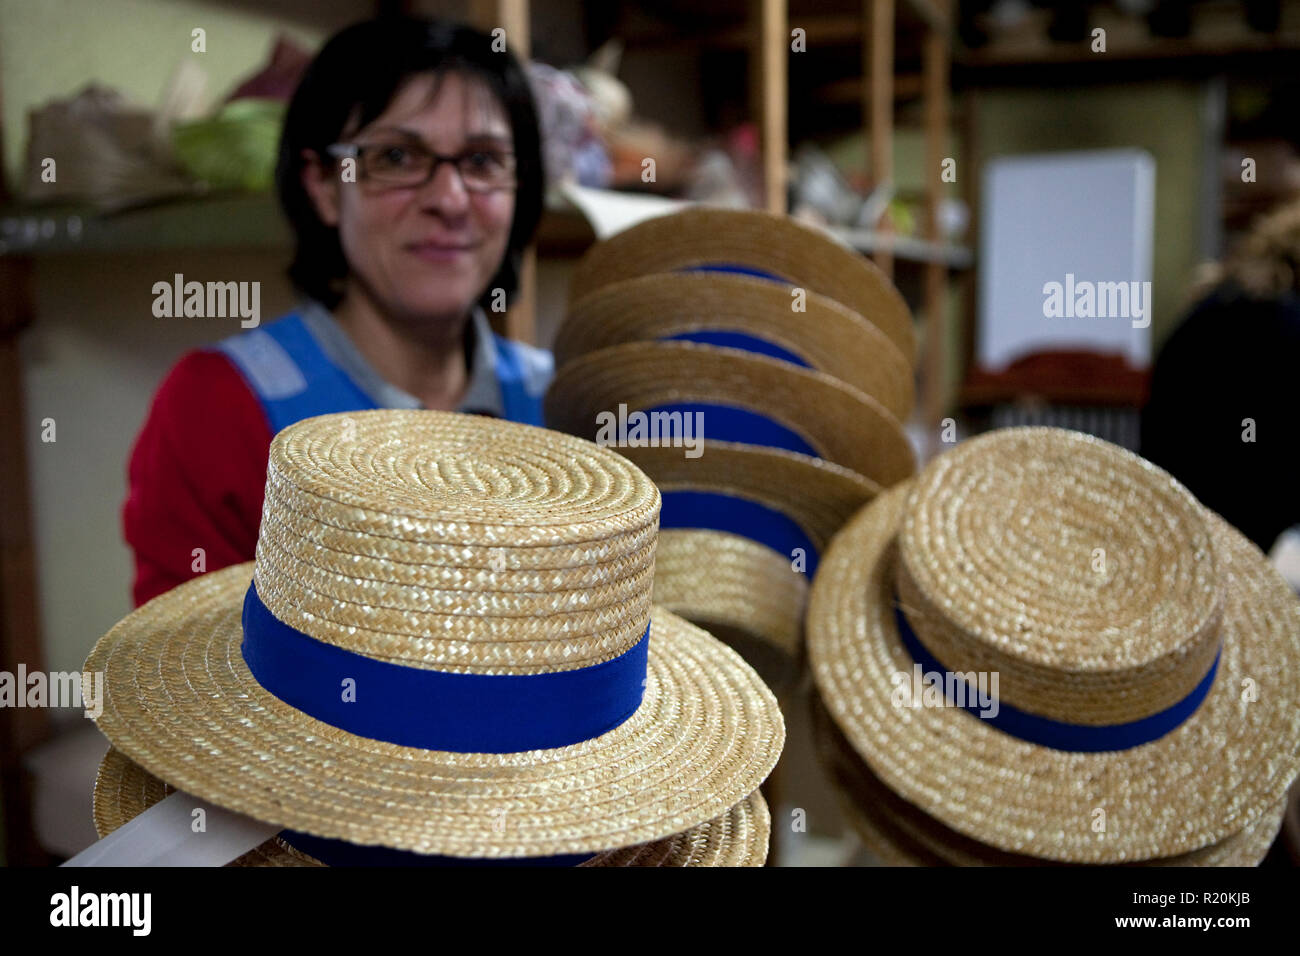 El 9 de diciembre de 2009 - Coustilleres' fábrica de sombreros, Septfonds, Francia - Patricia López trabaja desde hace 13 años en la fábrica de sombreros Coustilleres'. Ella posee el "Canotier" los sombreros están dispuestos a vender. Es el corazón de Septfonds francés sombrero de paja, debido a su muy antigua tradición hatter. El sombrero que la industria tuvo su auge comercial a finales del siglo XIX. Es una propiedad familiar Coustillères hat haciendo de la fábrica que ha venido haciendo sombreros de paja en Septfonds durante casi 100 años. Hacen sombreros de paja, fieltro, tela y así como las tapas. El propietario actual es Jean-Claude Coustilleres. Él es uno de los Foto de stock